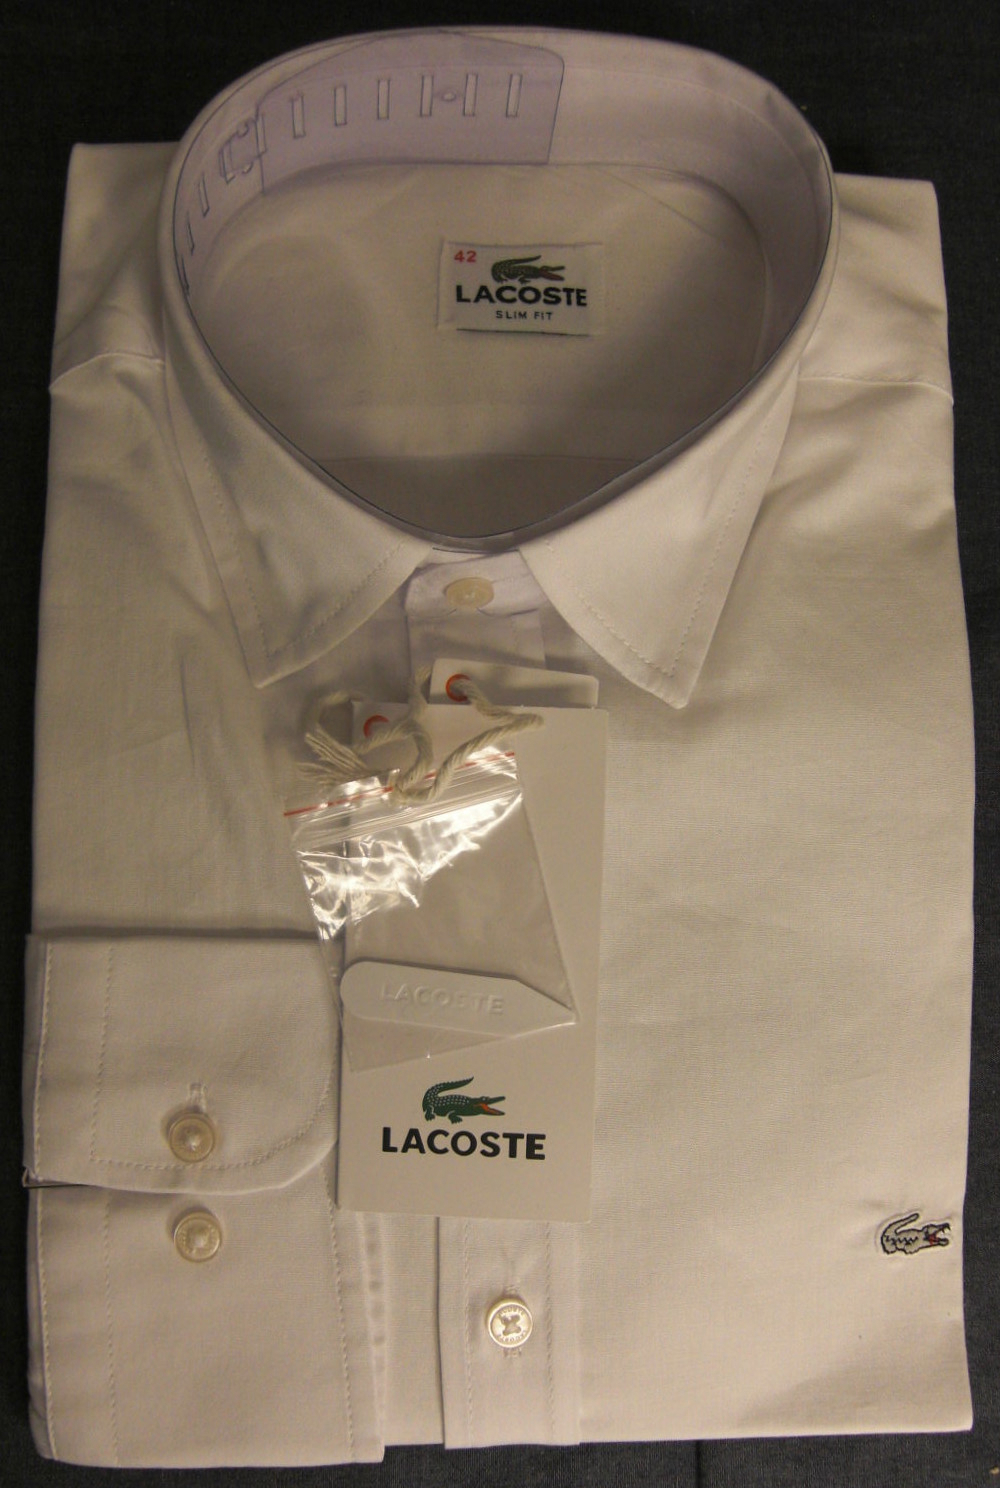 Lacoste Slim Fit Herrenhemd, Größe 42, weiß, Langarm, NP 120 Euro.